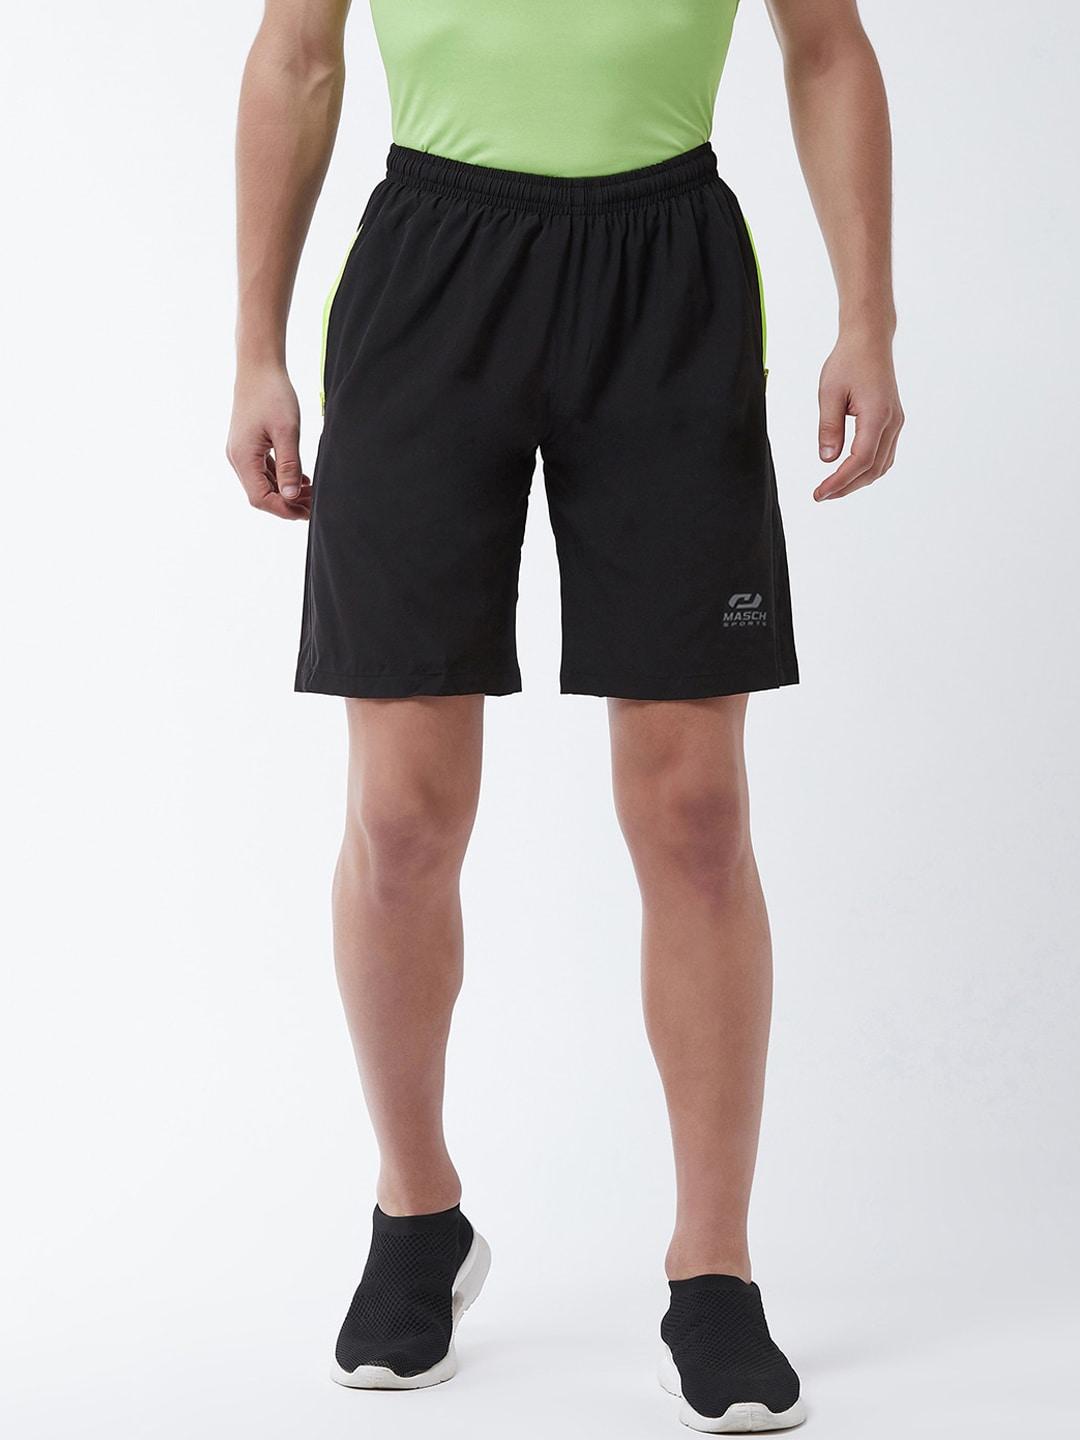 masch-sports-men-black-dri-fit-sports-shorts